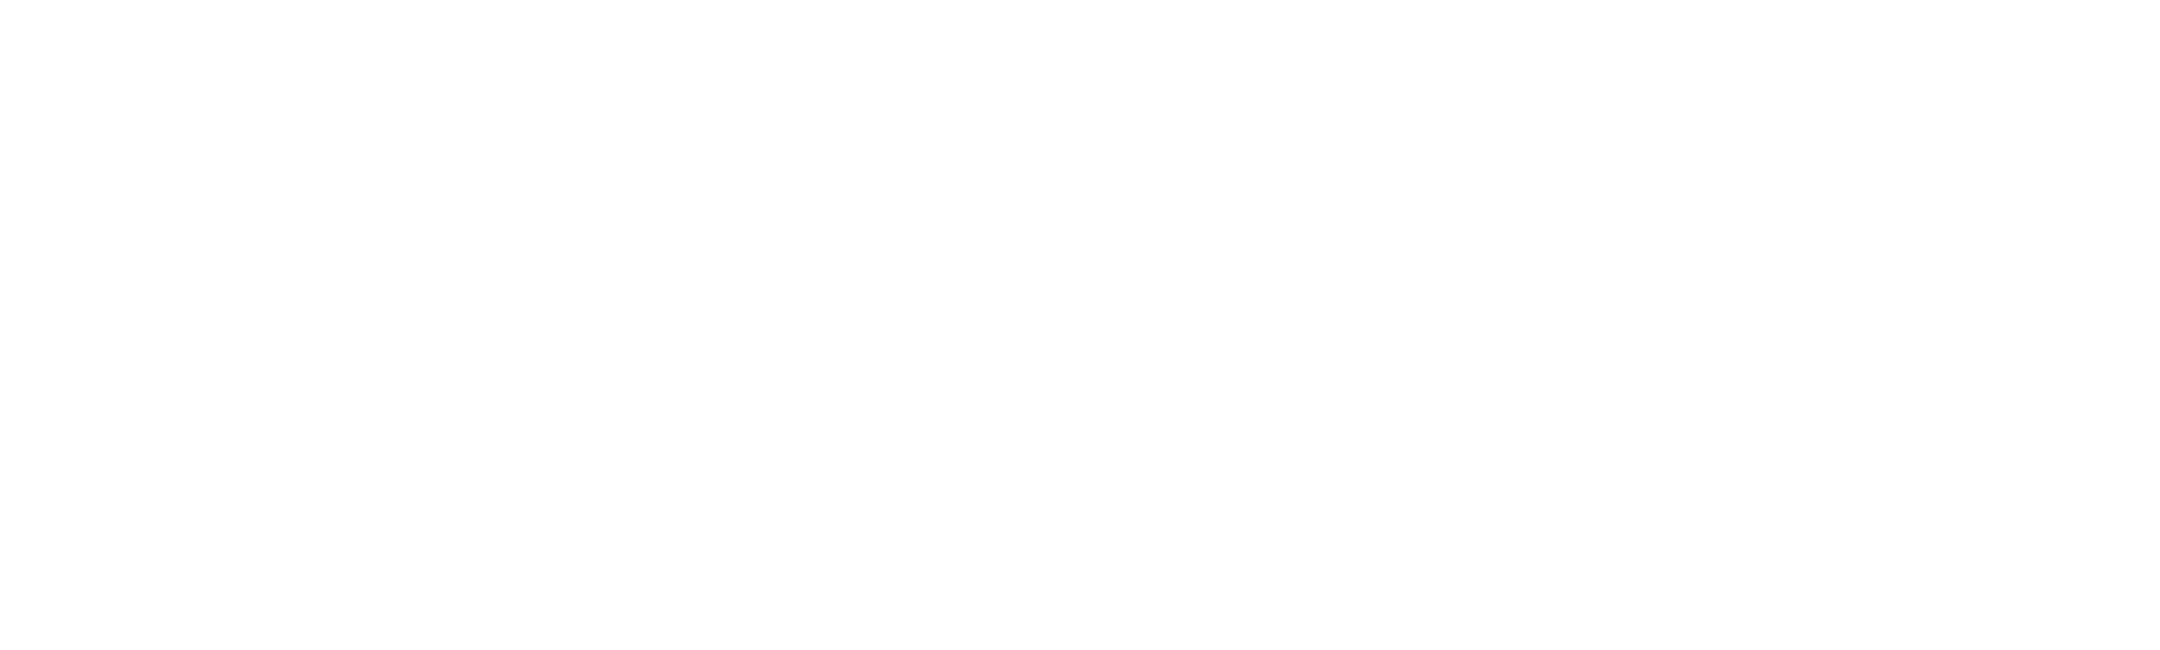 Processeur de Passerelle de Paiement de Cryptomonnaie - FSFPAY.com